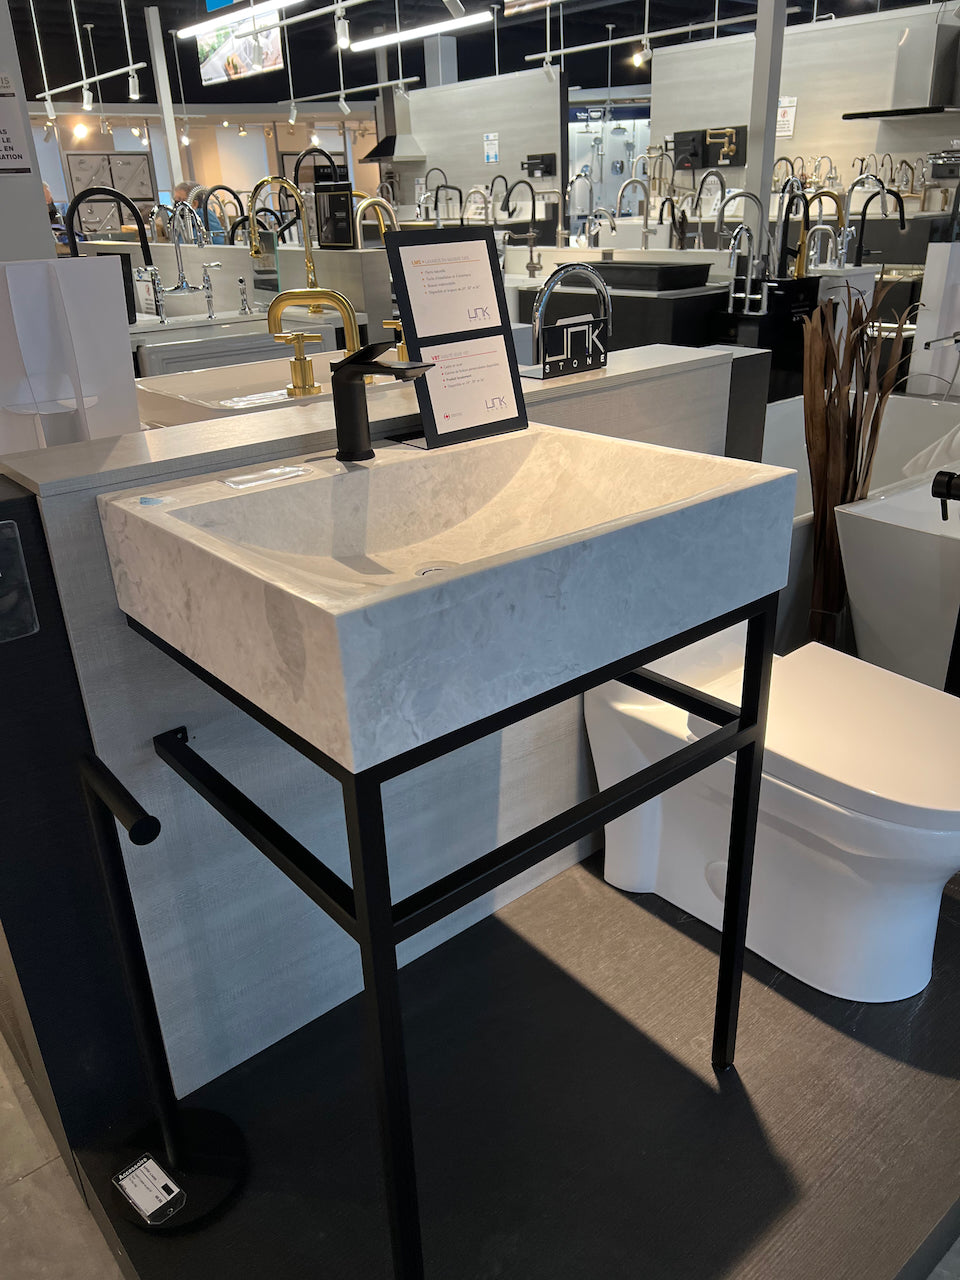 Console de salle de bain noir clair | Lavabo en bloc de marbre glacé | VBT 24